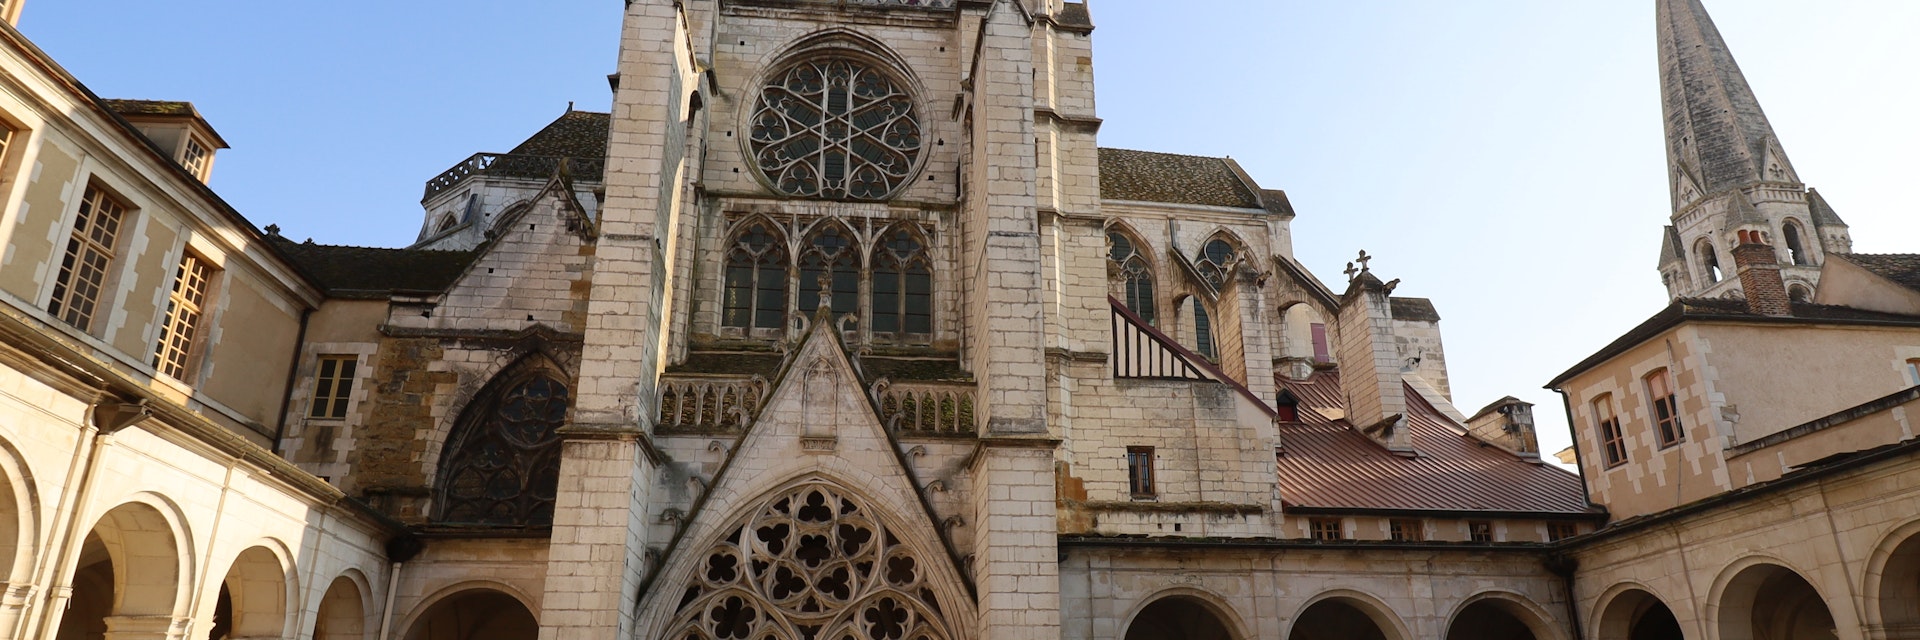 Saint Germain Abbey in Auxerre.